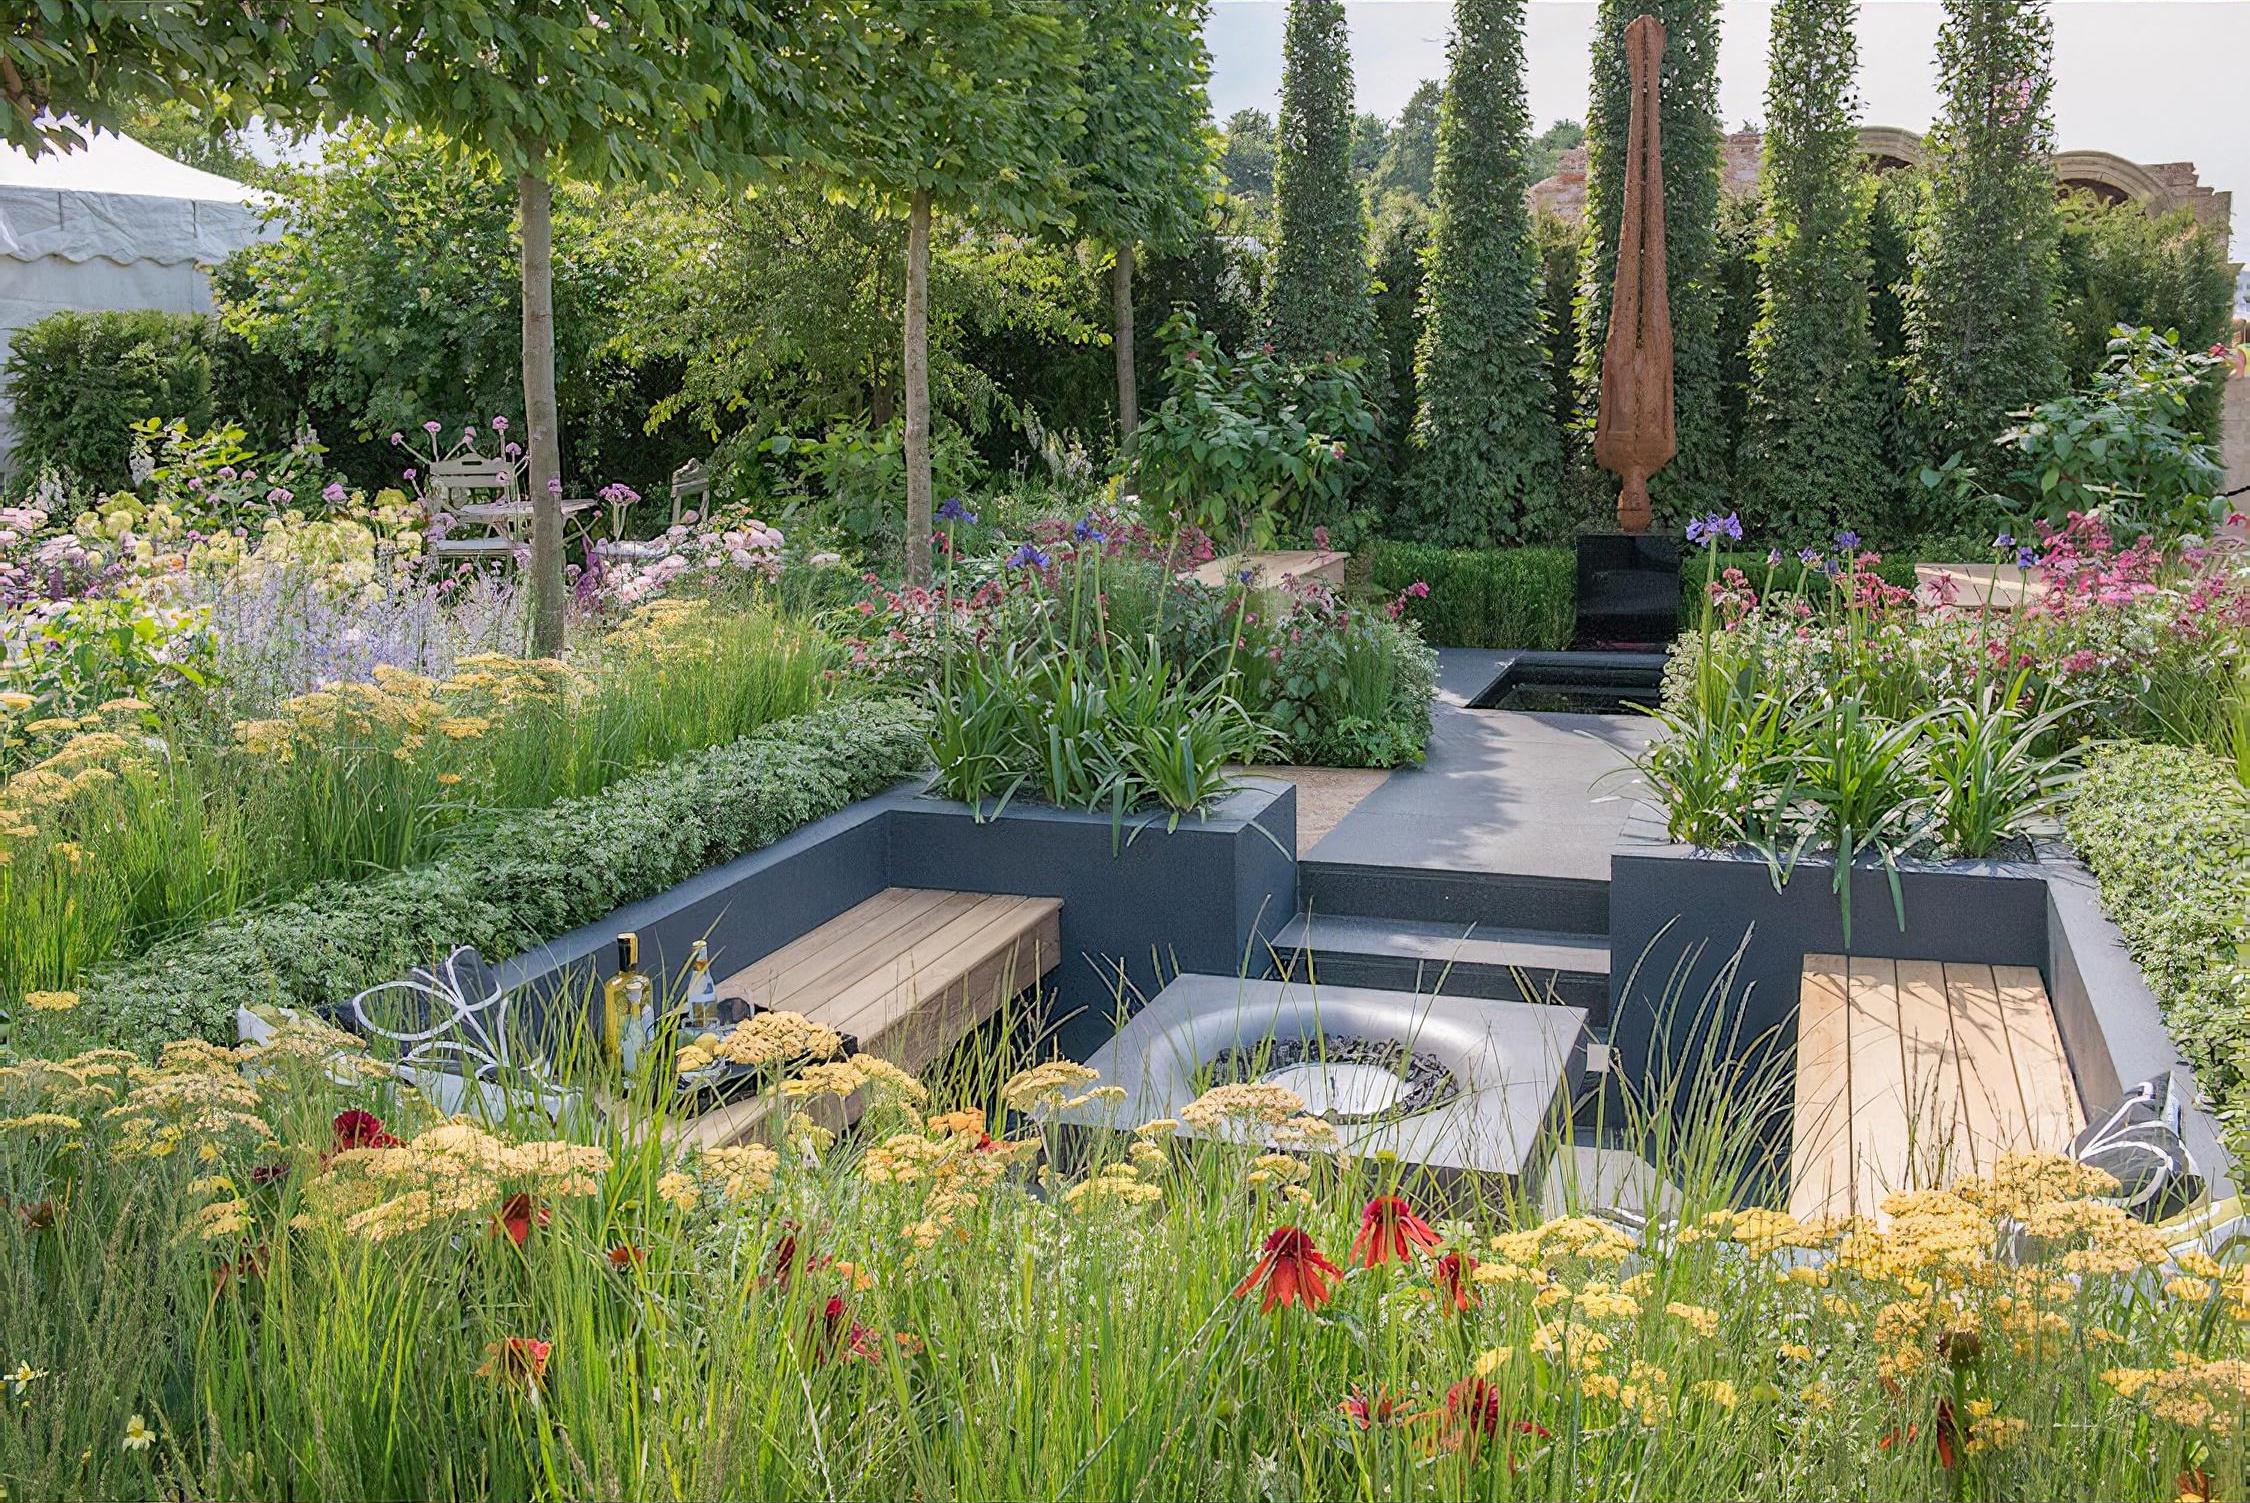 Best of Both Worlds Garden RHS Hampton Court Flower Show 2018 by garden designer Rosemary Coldstream